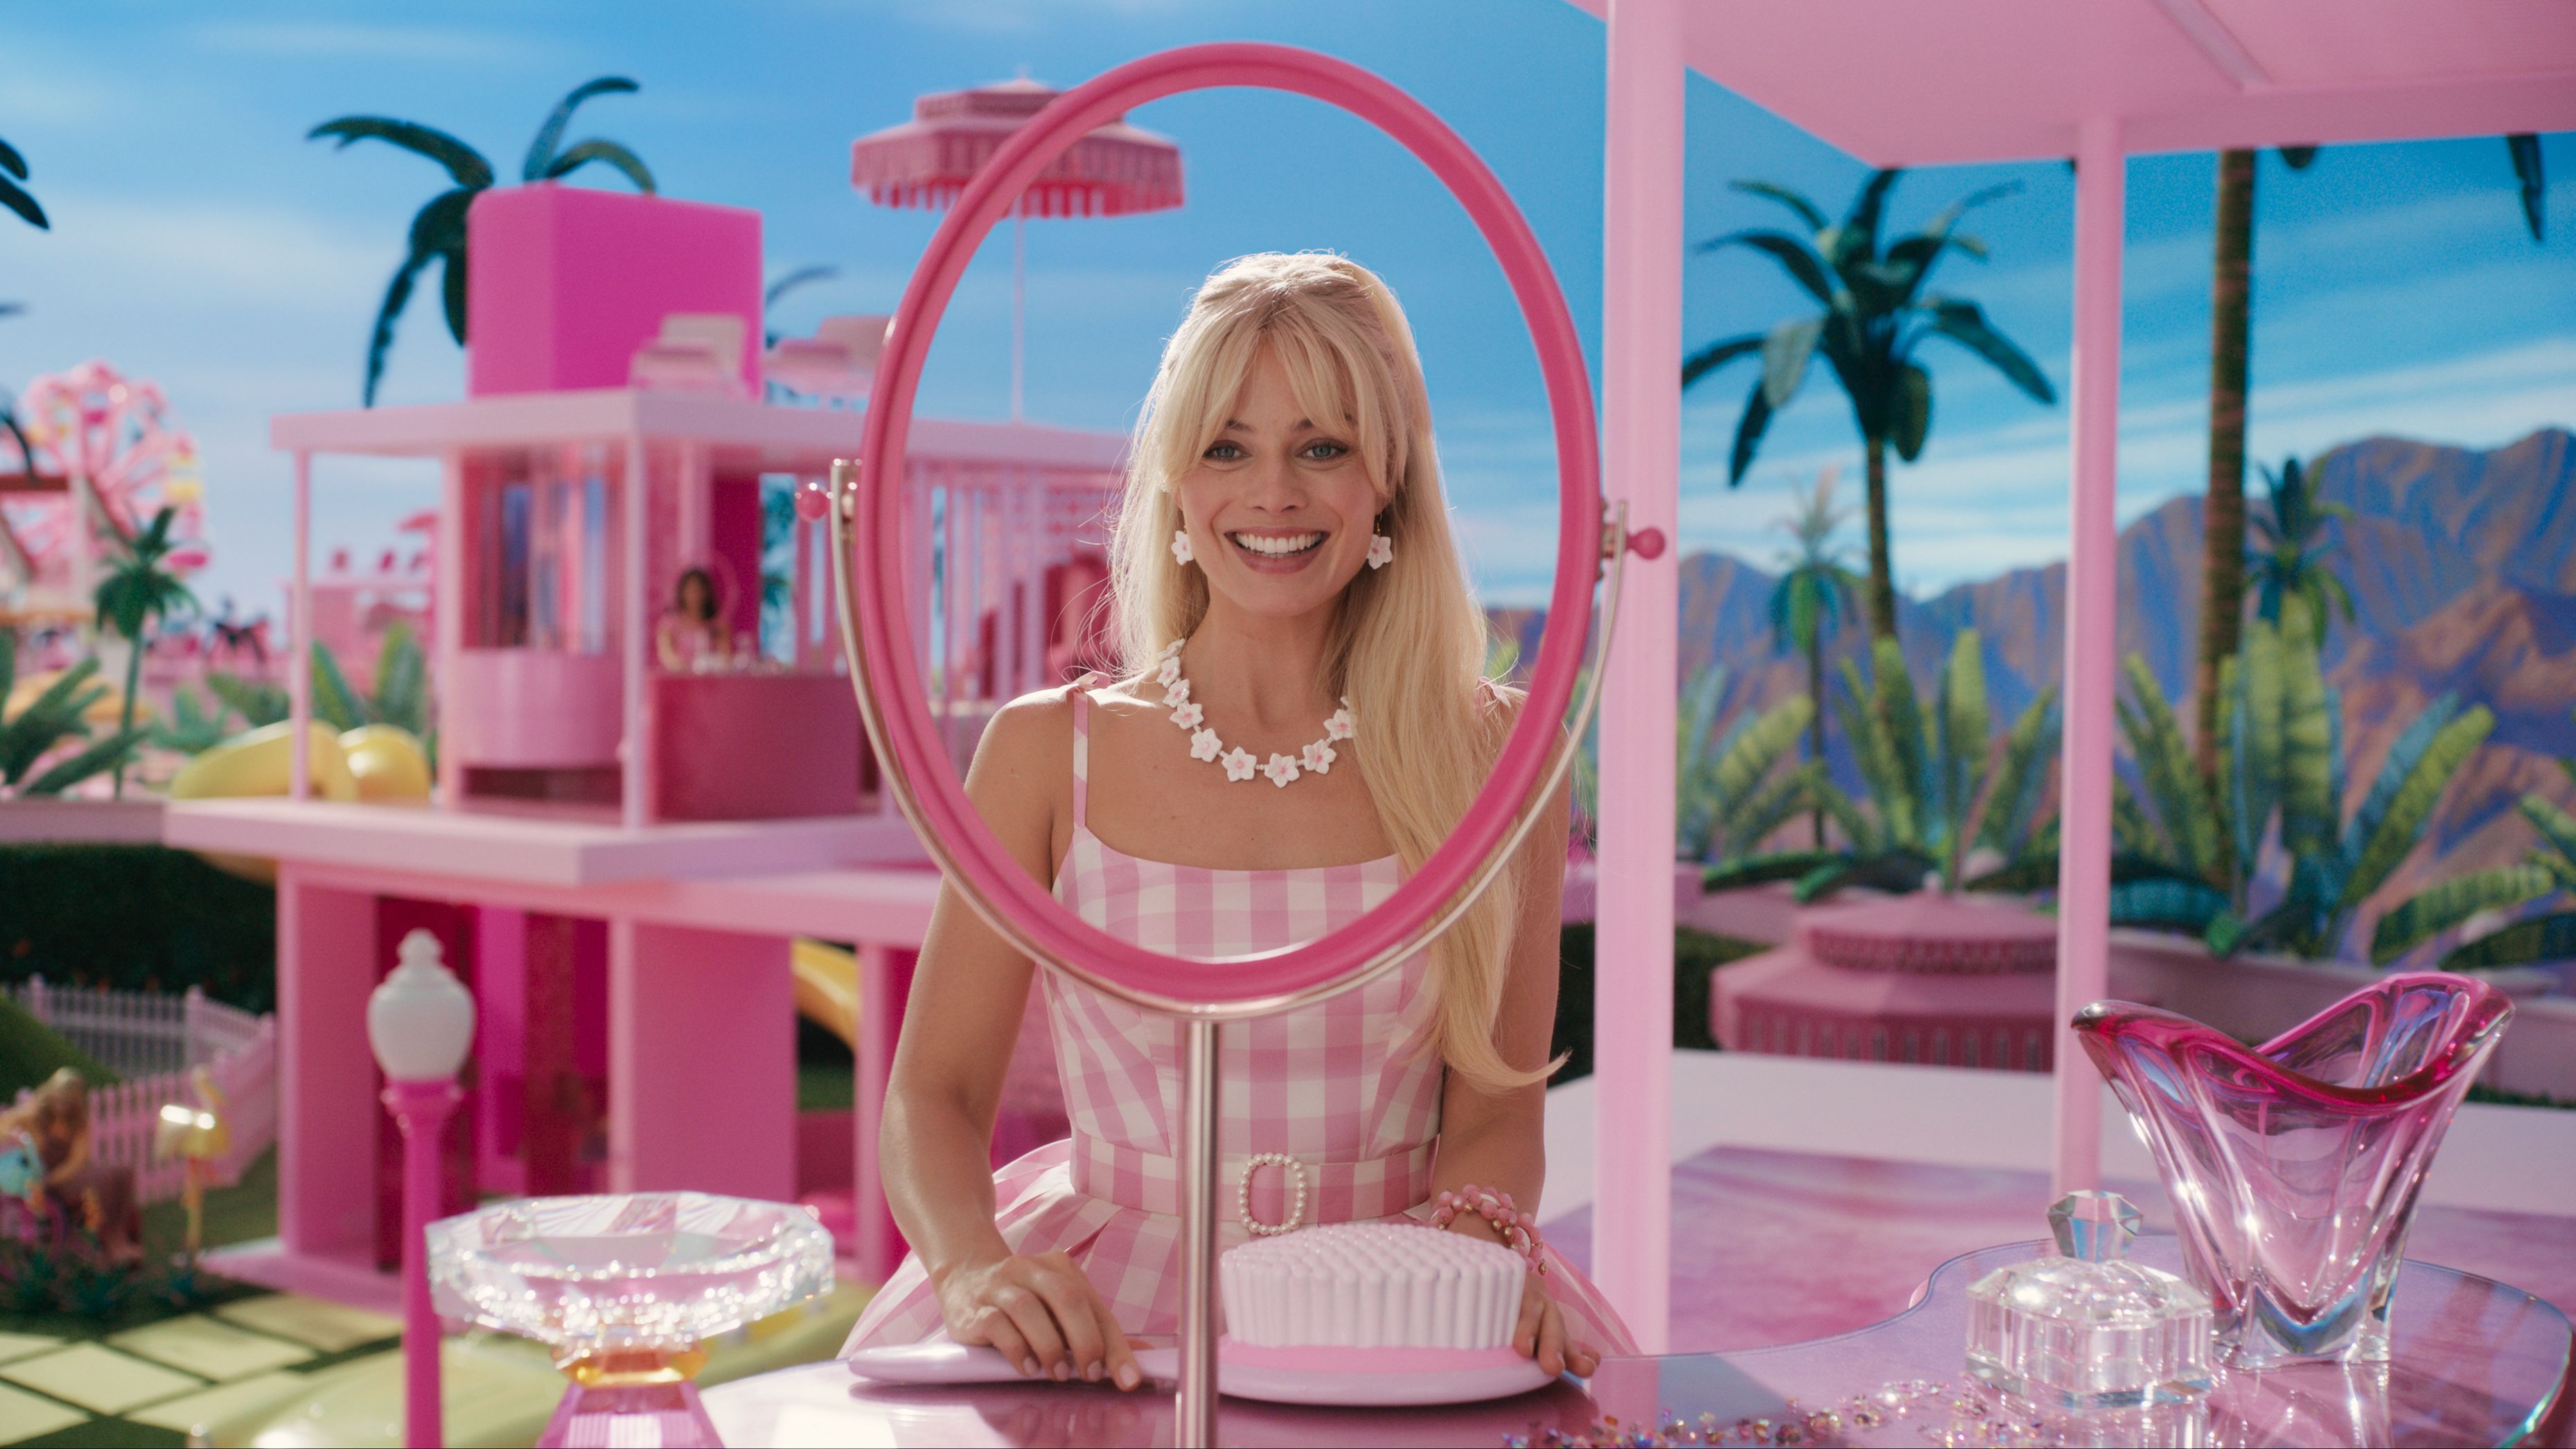 Casa Da Barbie De 100 Reais